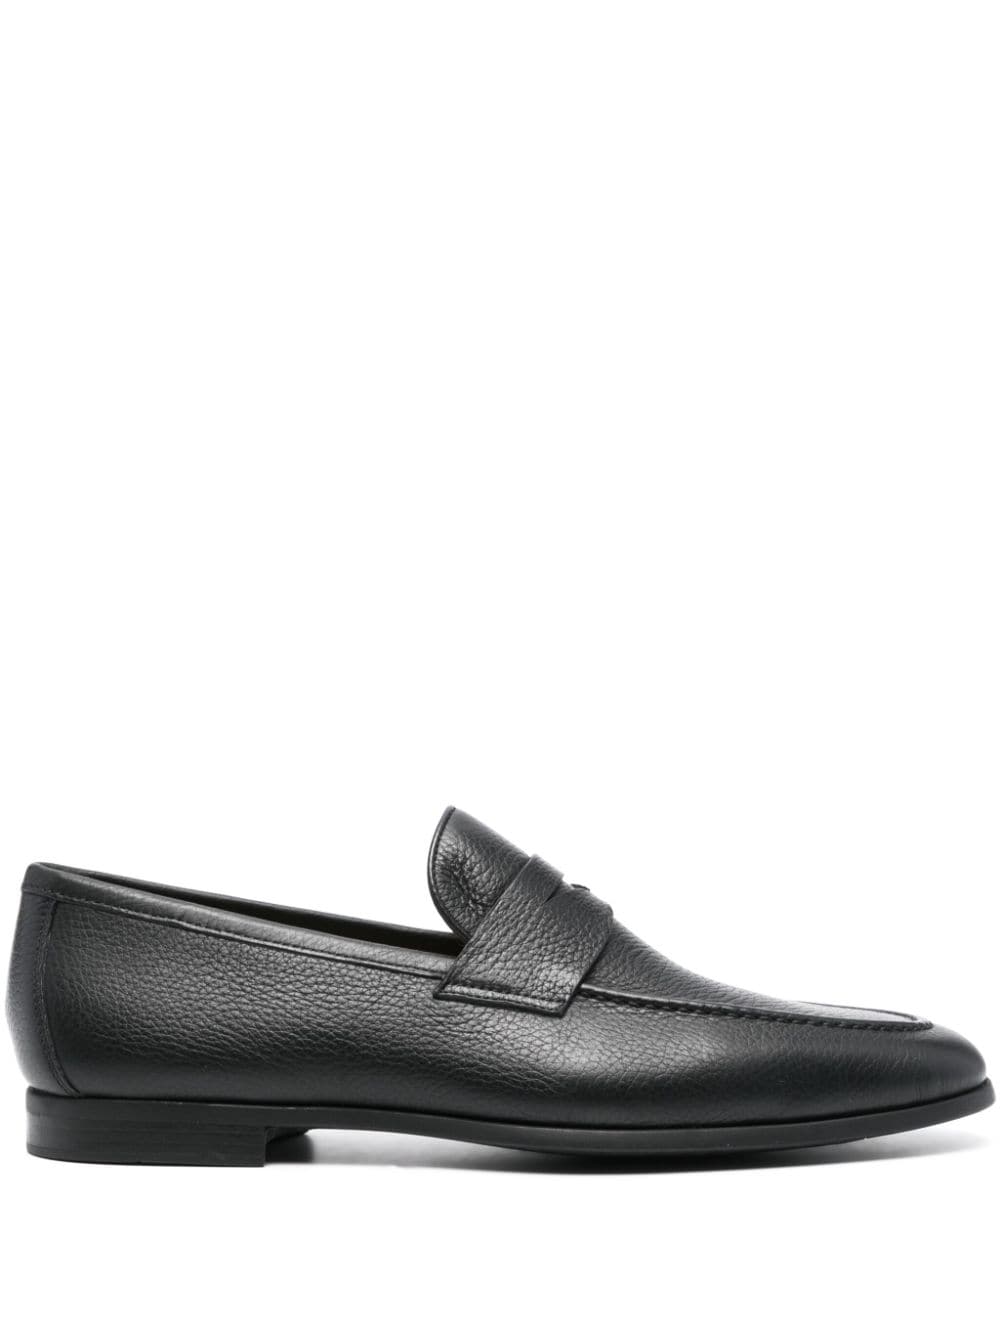 Magnanni Diezma II leather loafers - Black von Magnanni